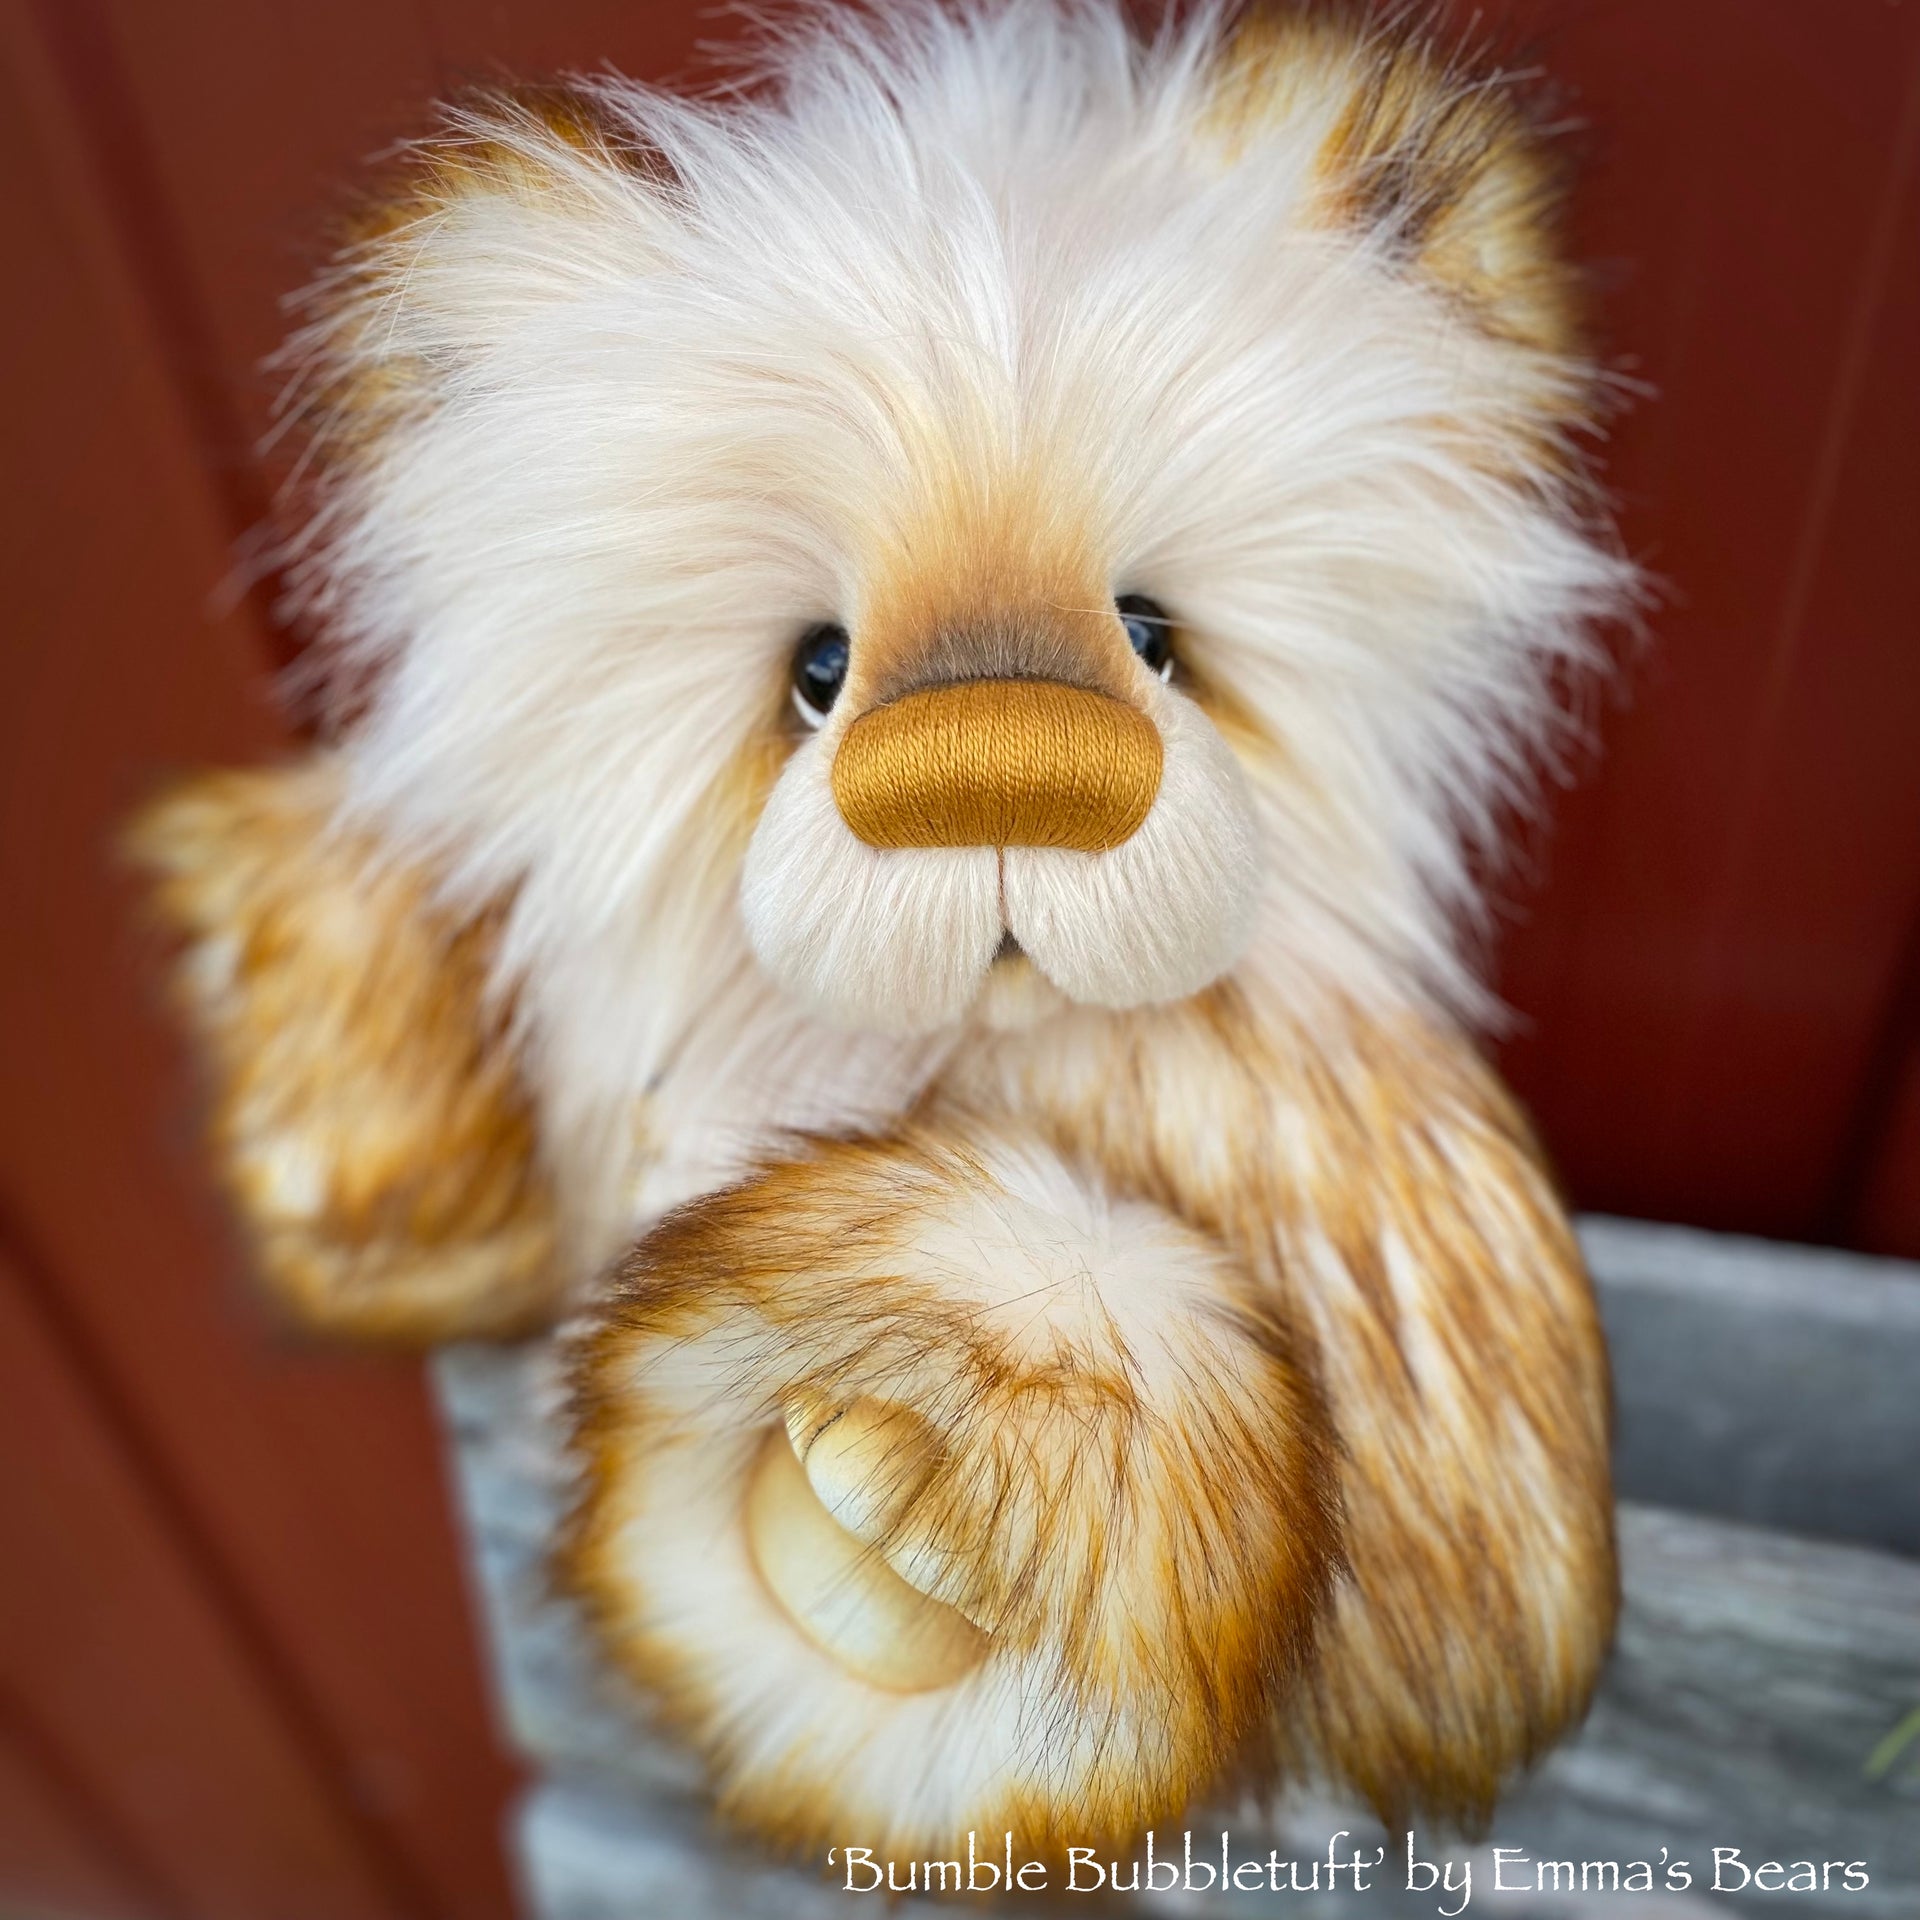 Bumble Bubbletuft - 15" faux fur bear by Emmas Bears - OOAK